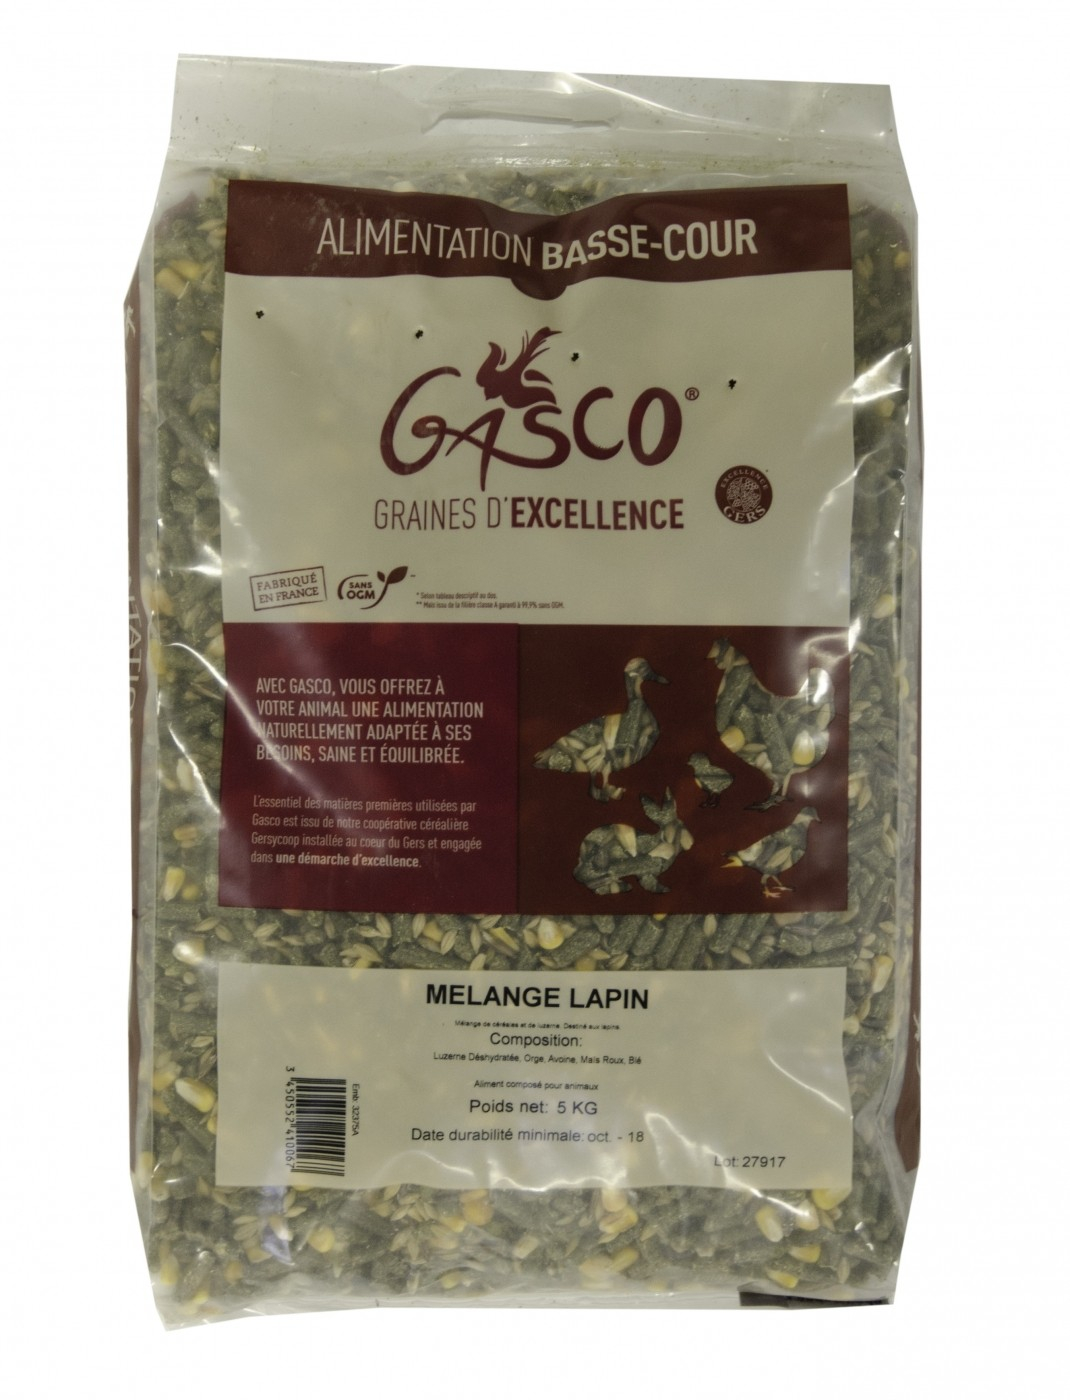 Gasco mélange céréales granulés pour basse cour